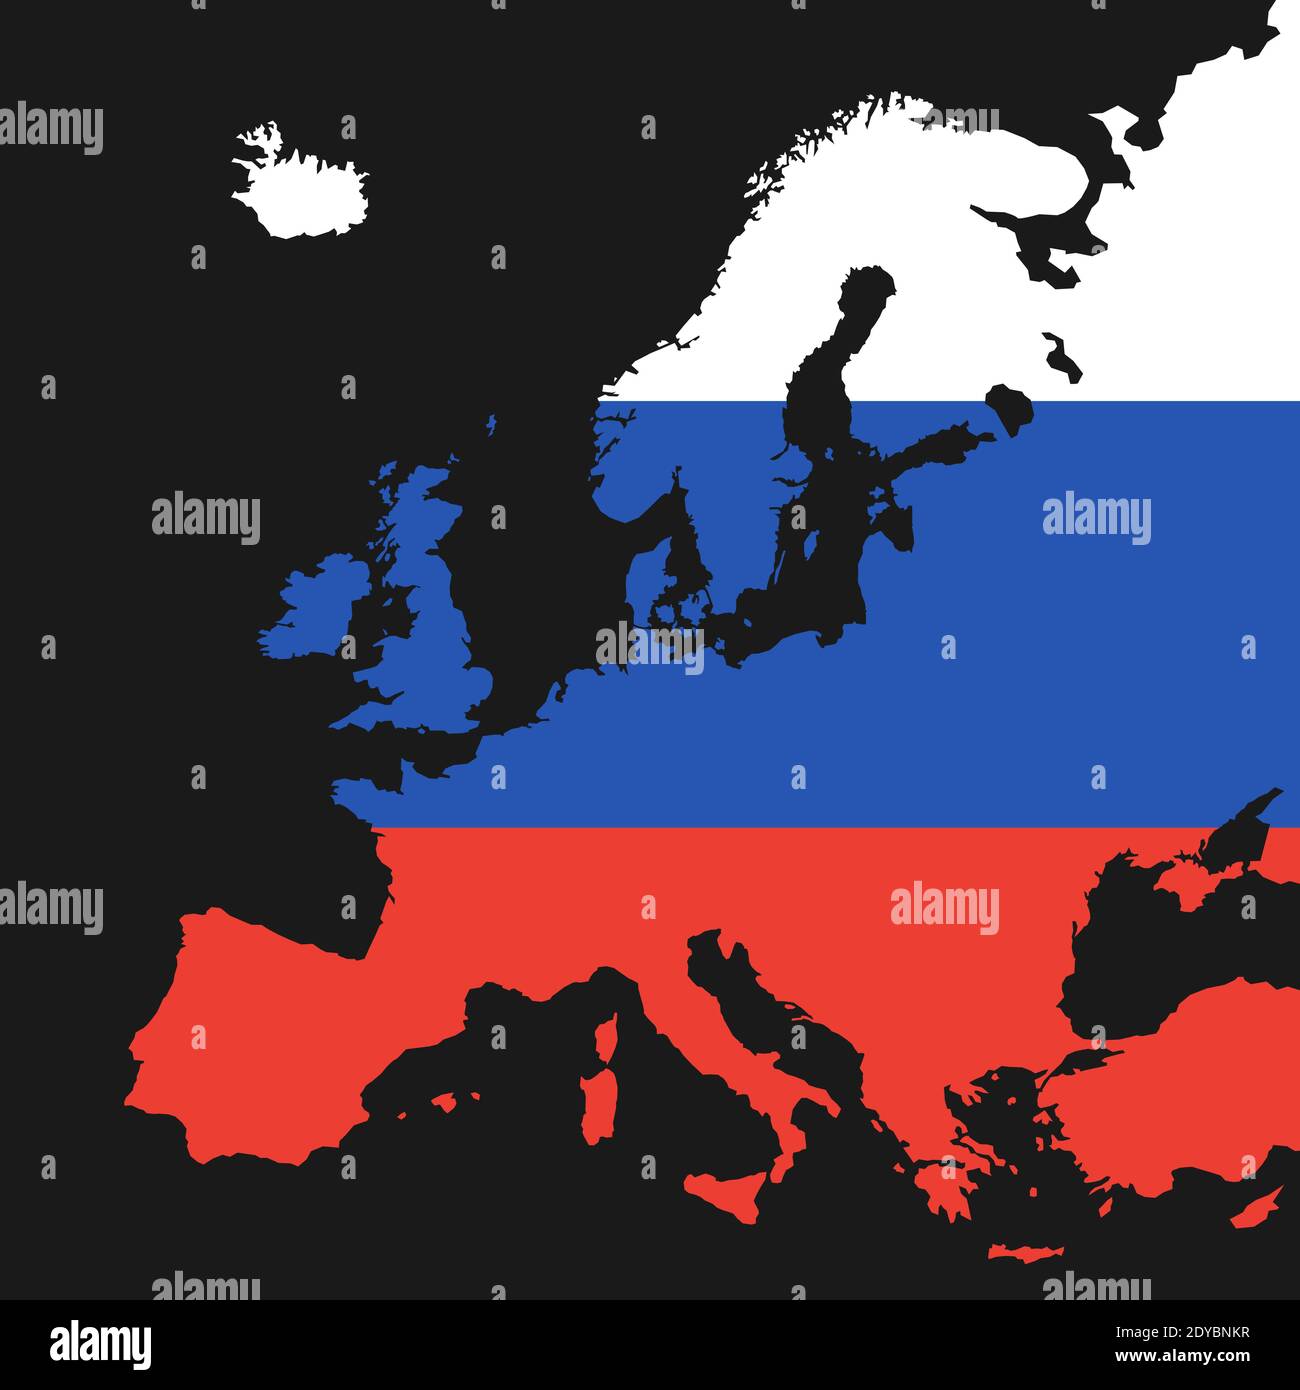 Mappa dell'Europa a colori della Russia. Metafora del continente europeo come sfera di interesse e influenza della Russia Foto Stock